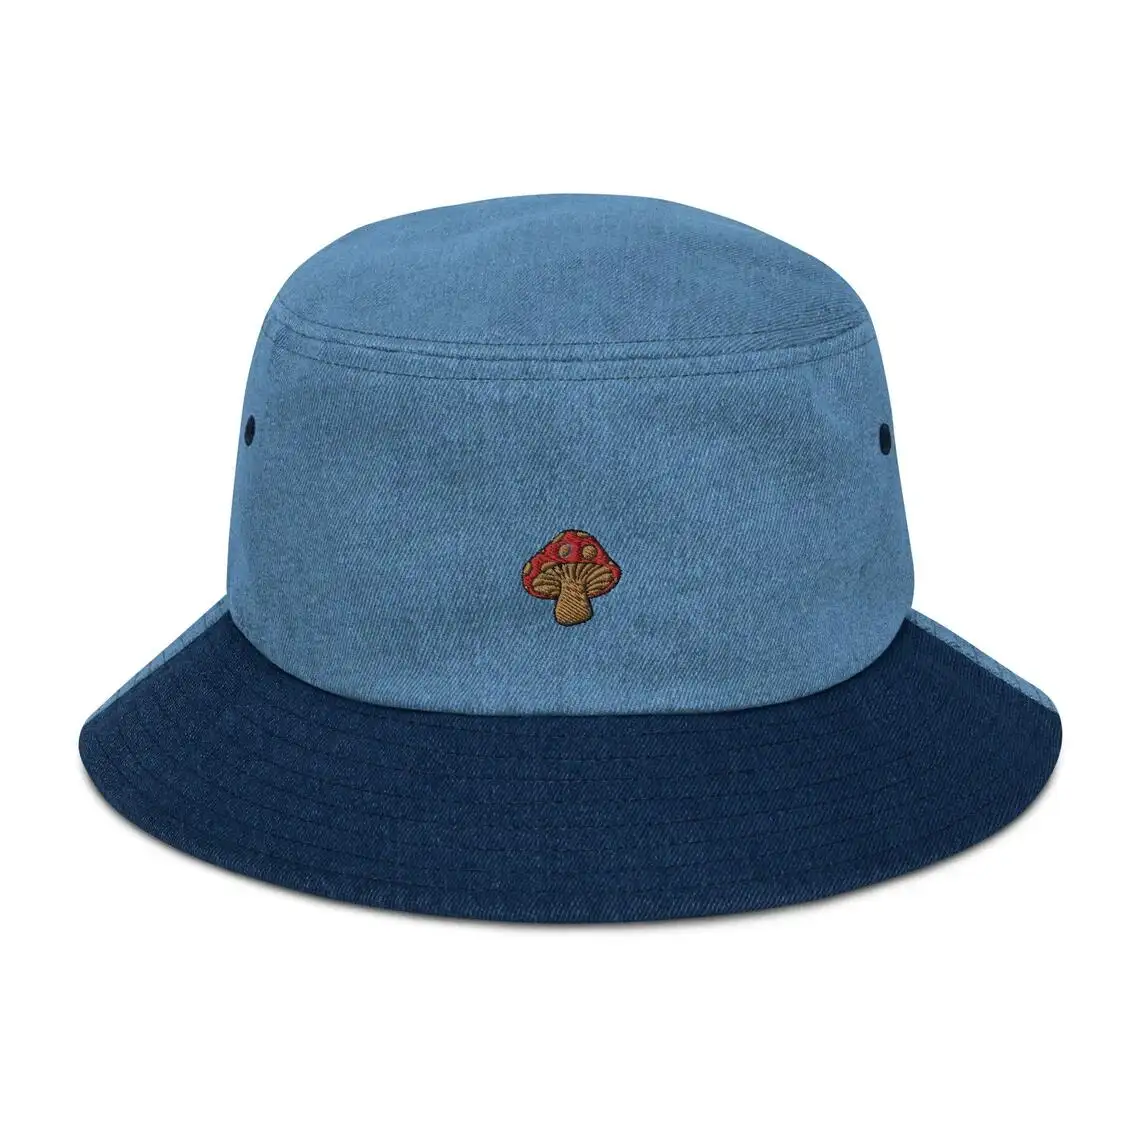 العصرية المطرزة مرسومة الفطر الدنيم قبعة بحافة الصيف مريحة للتنفس قبعة بحافة عالية الجودة مخصص INJAE فينا